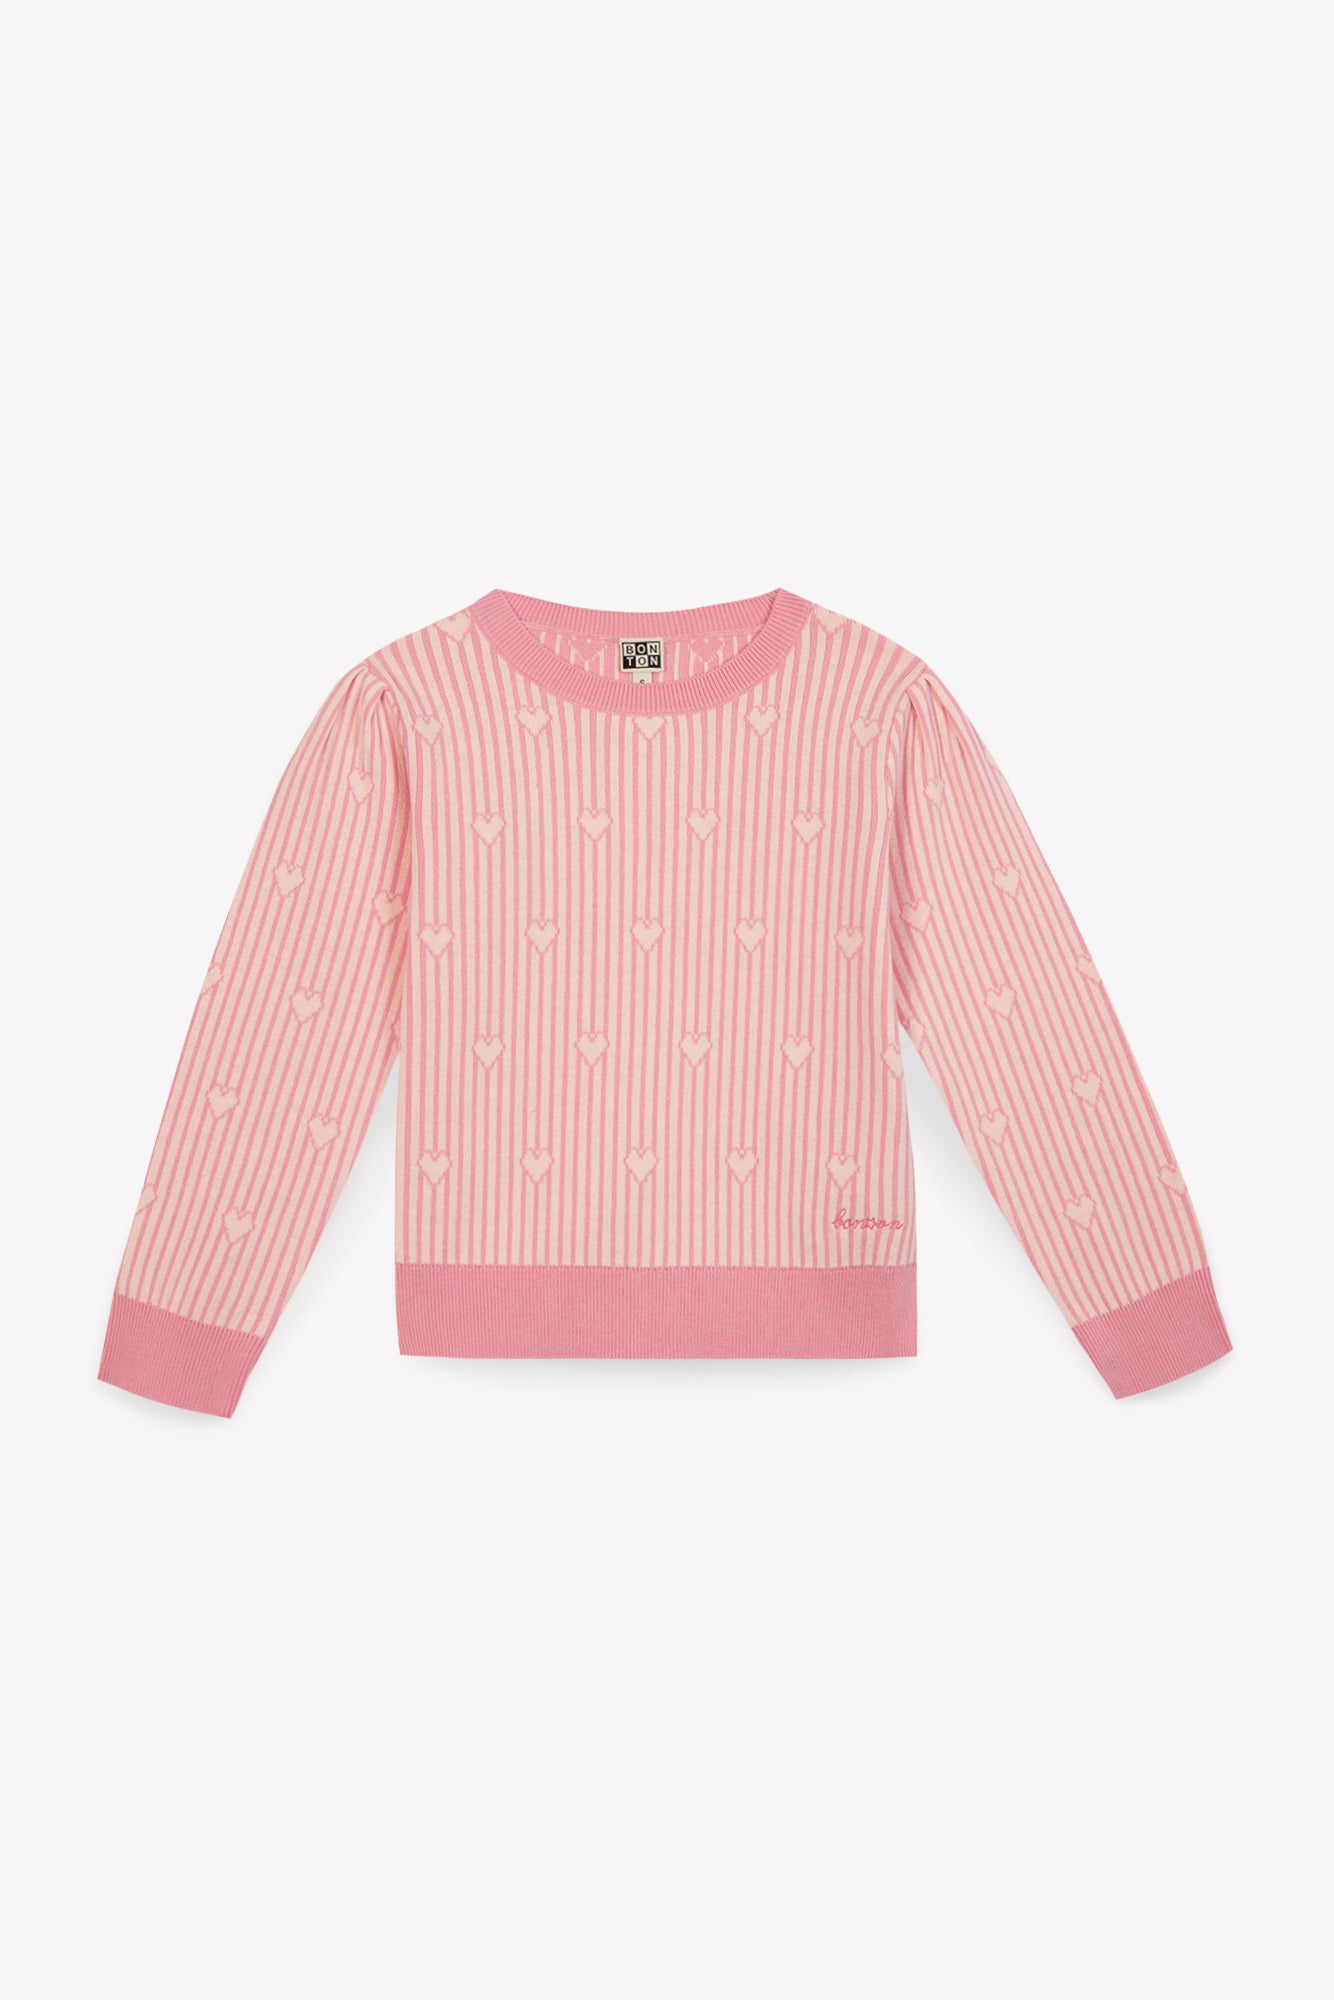 Sweater - Paula Pink cotton Jacquardheart